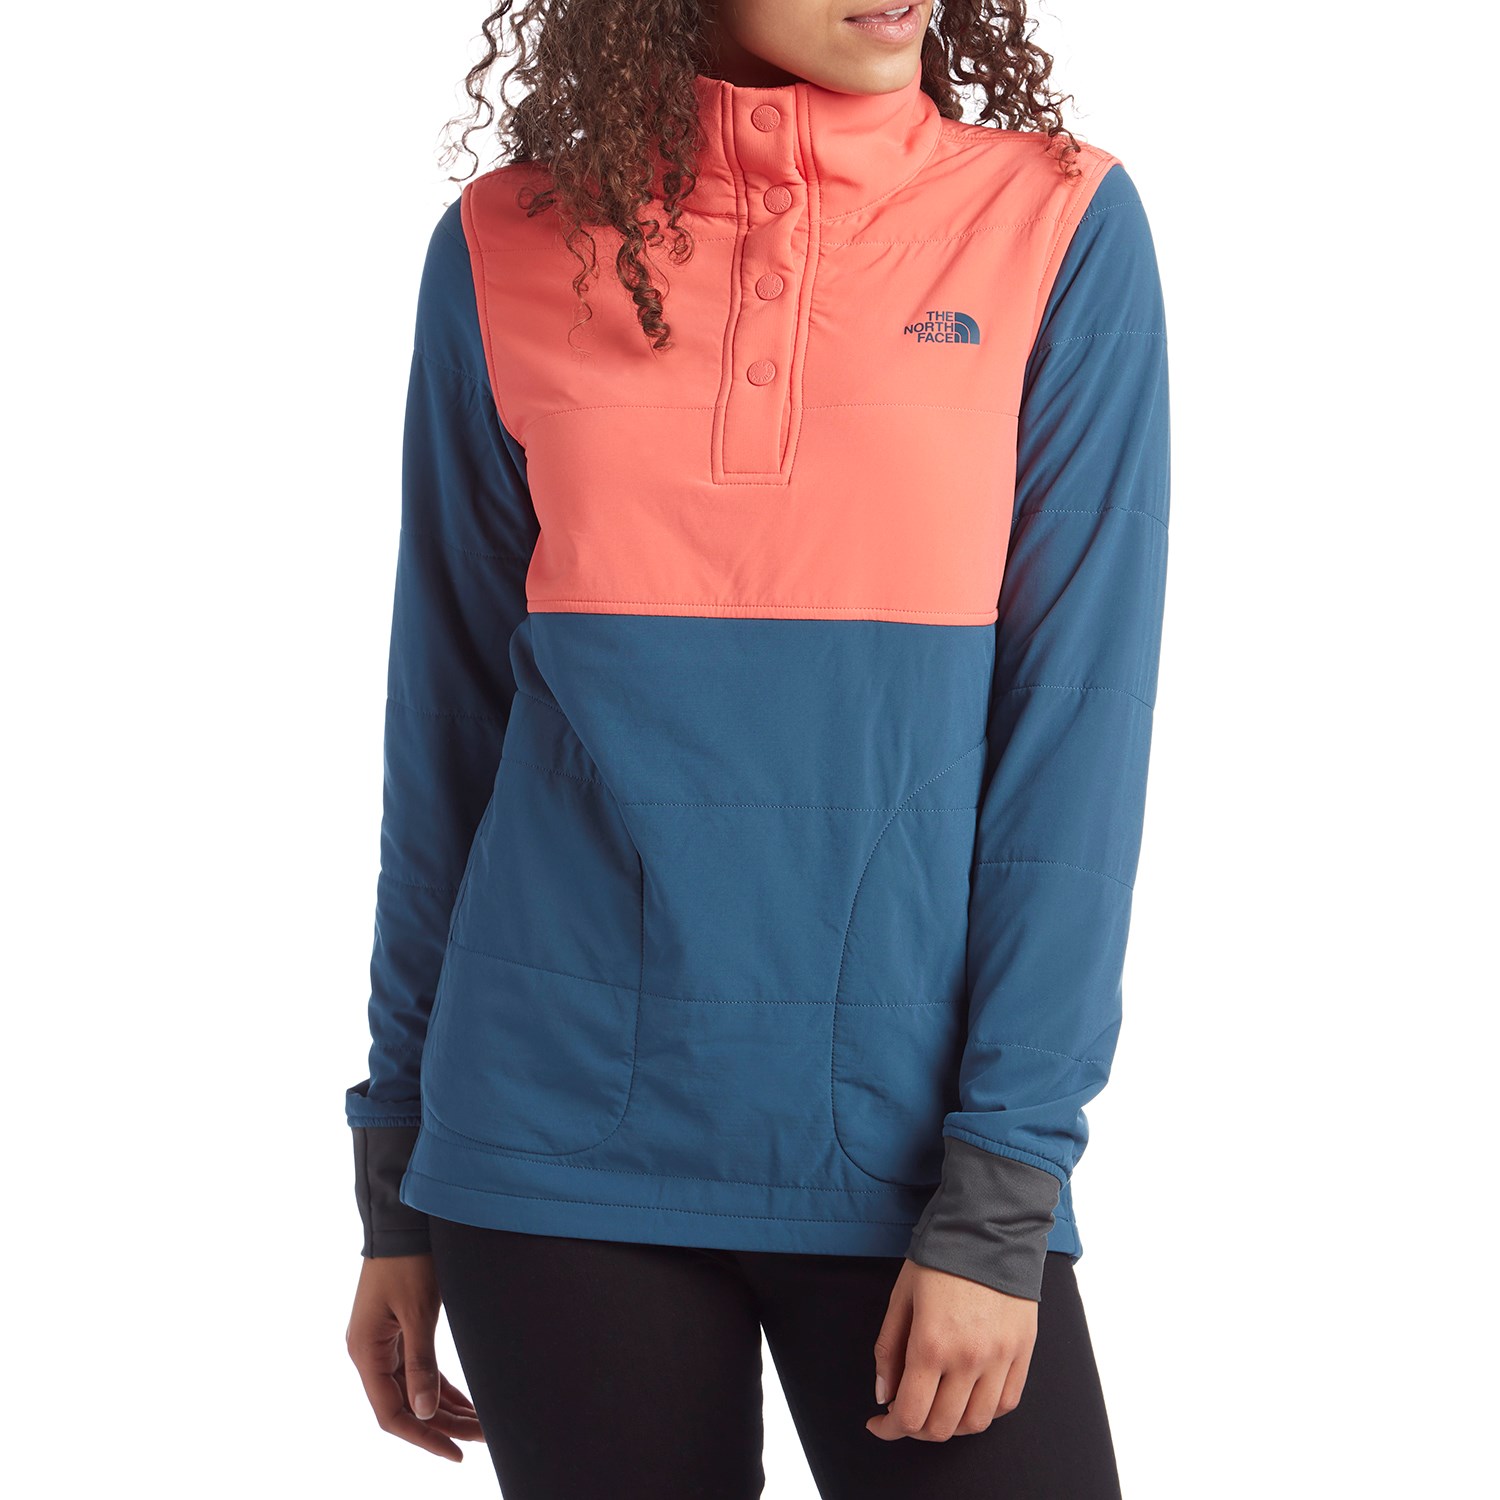 Tnf Mountain Sweatshirt on Sale, 58% OFF | jsazlaw.com